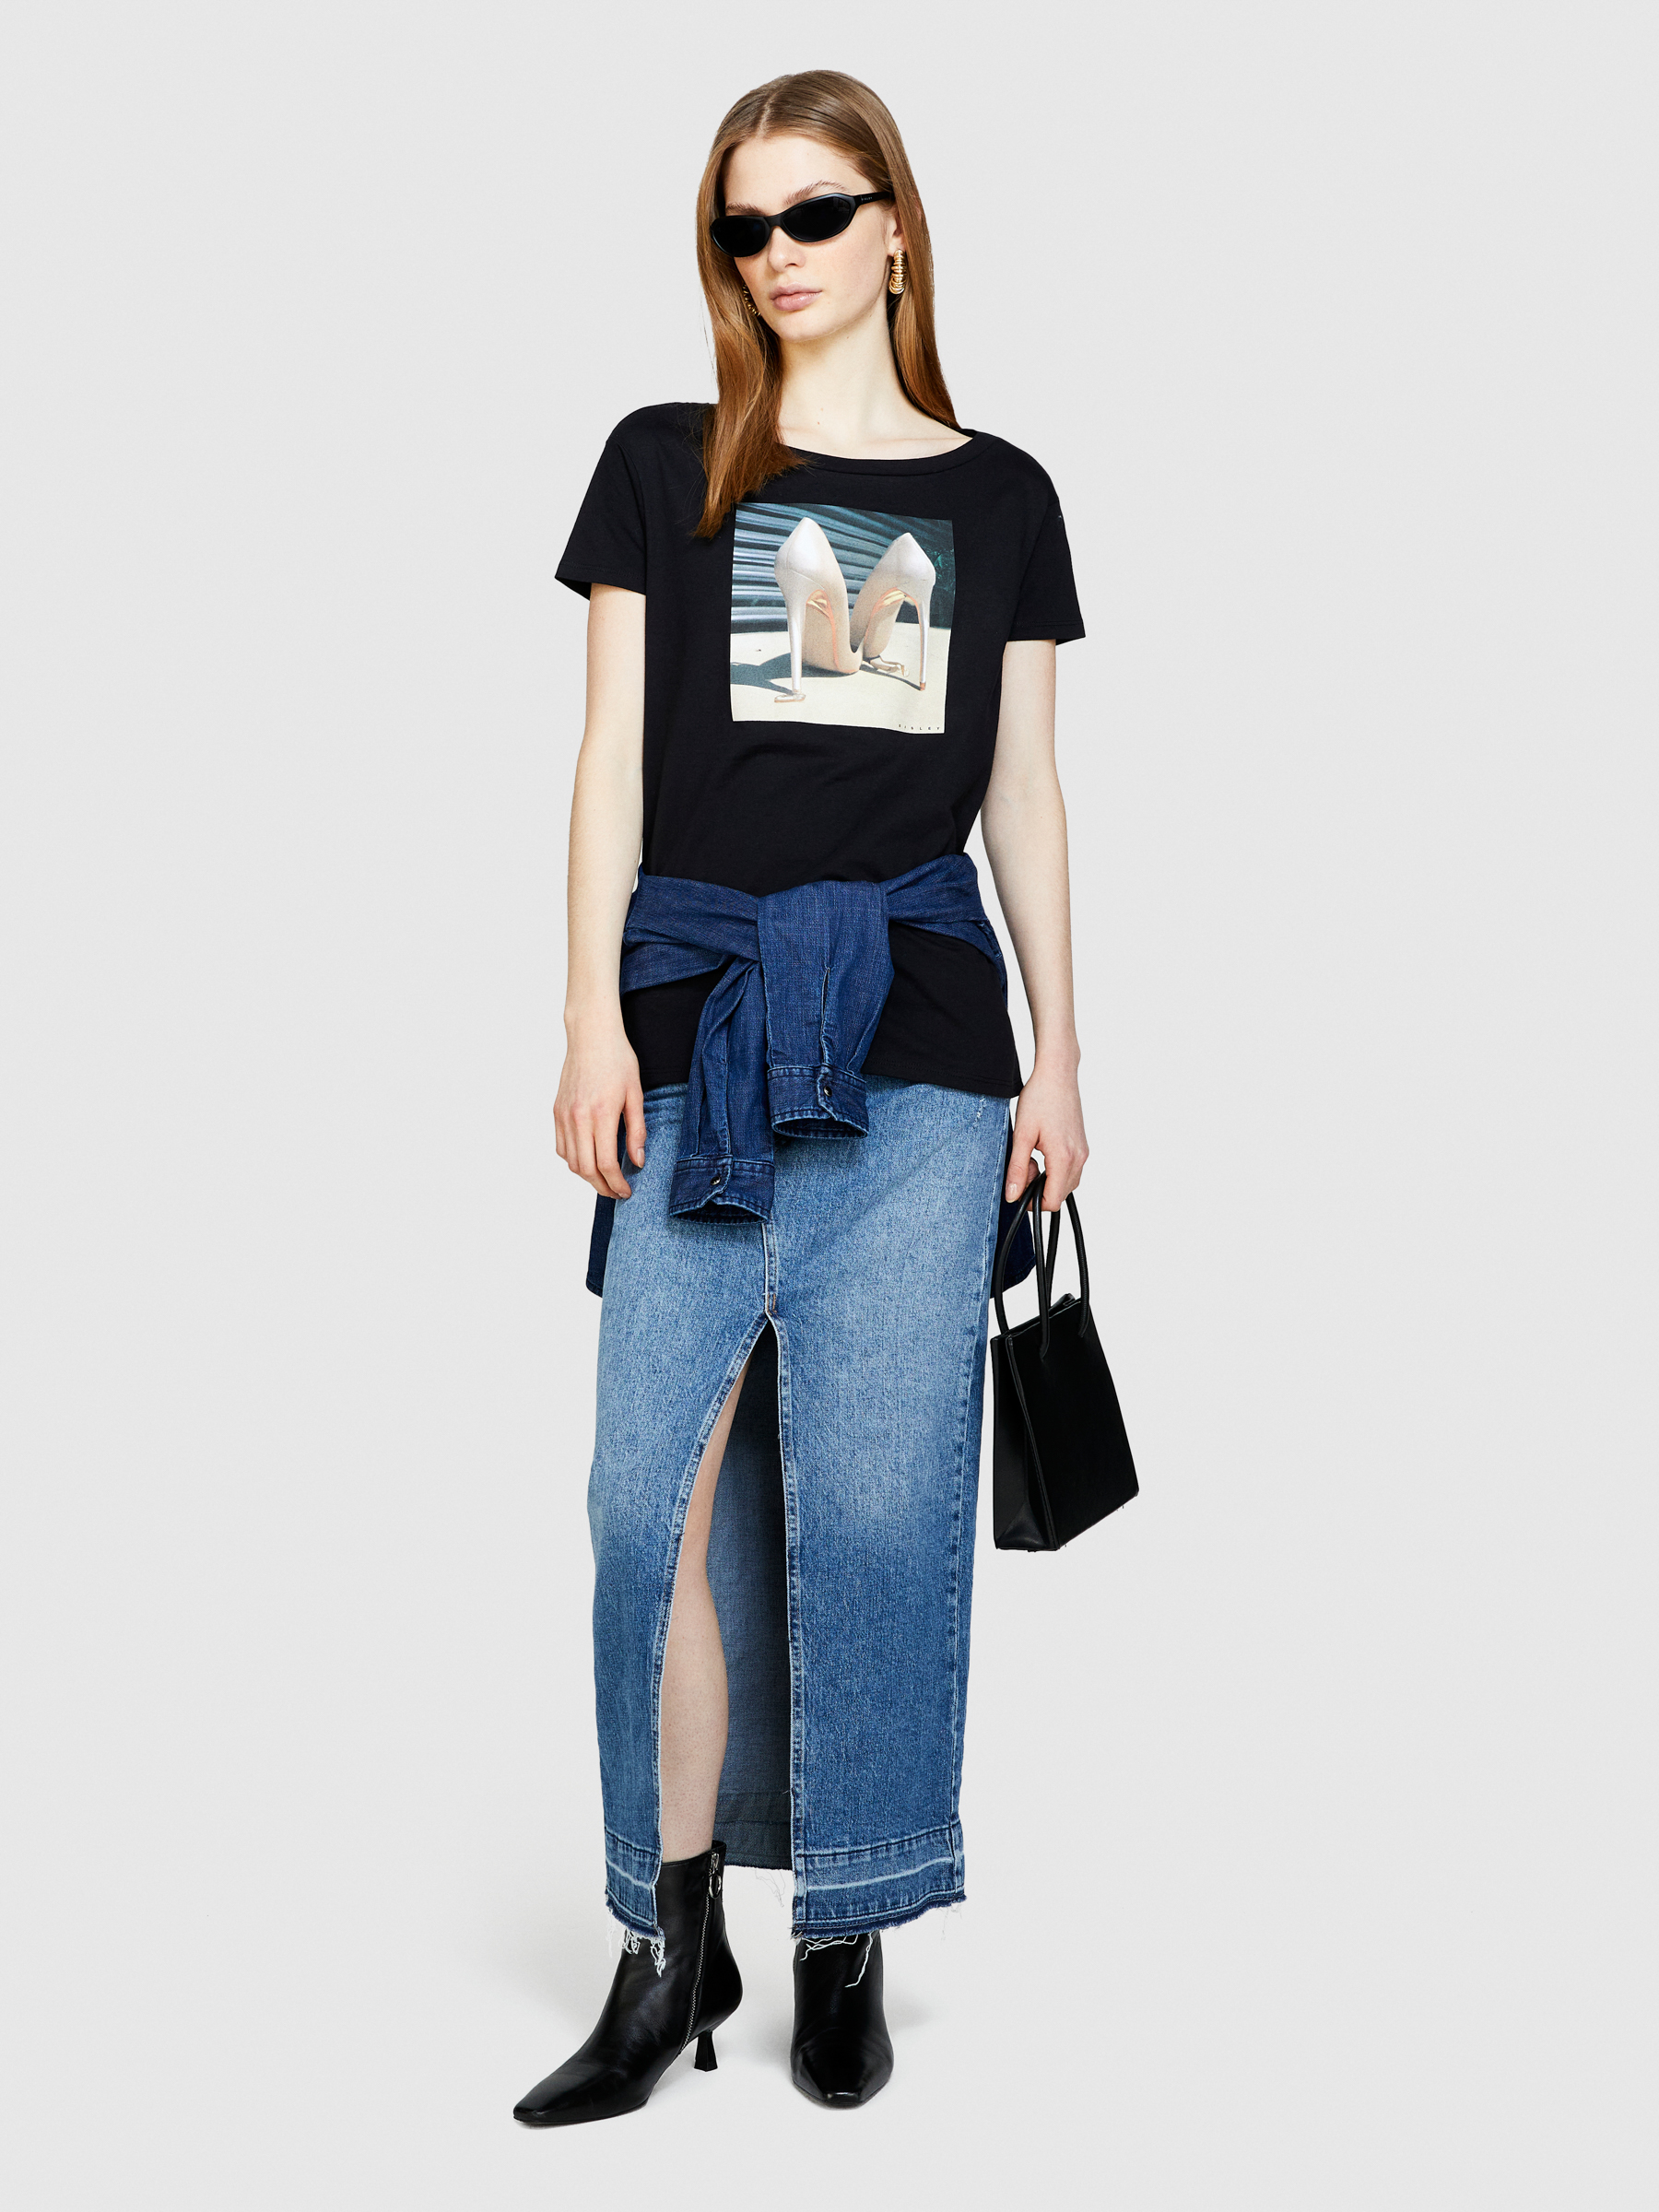 Sisley - T-shirt With Print, Woman, Black, Size: L